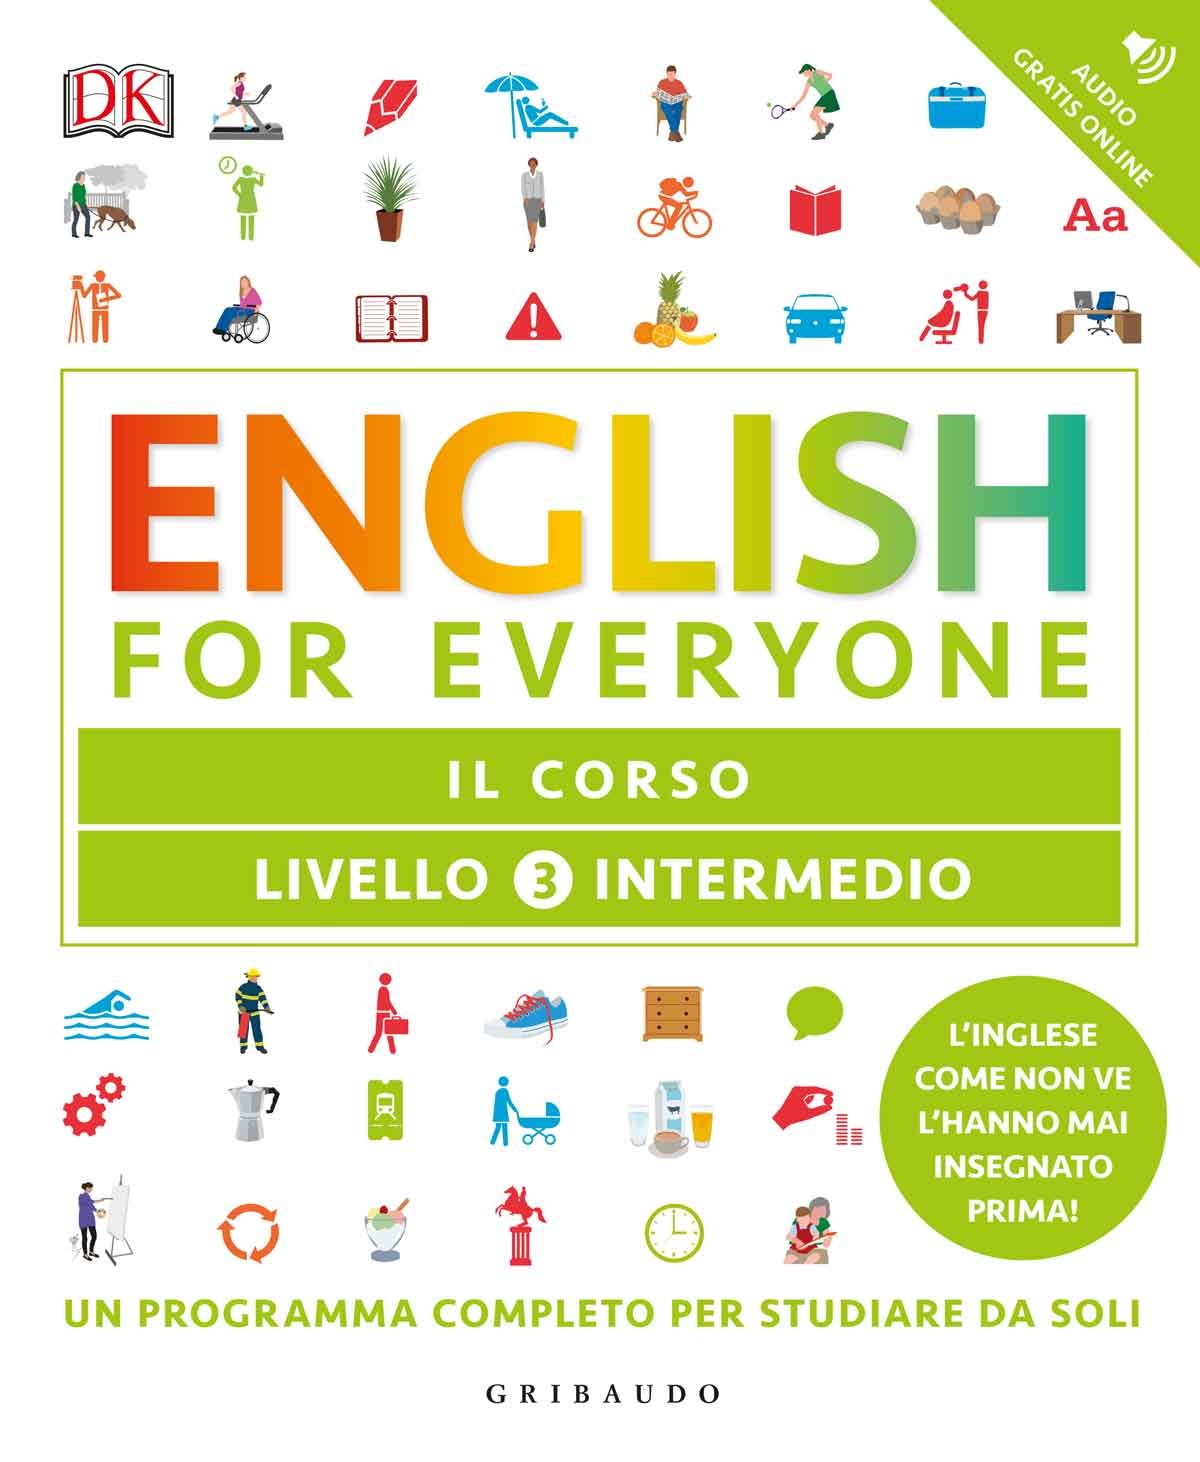 English for everyone - Livello 3 intermedio - Il corso